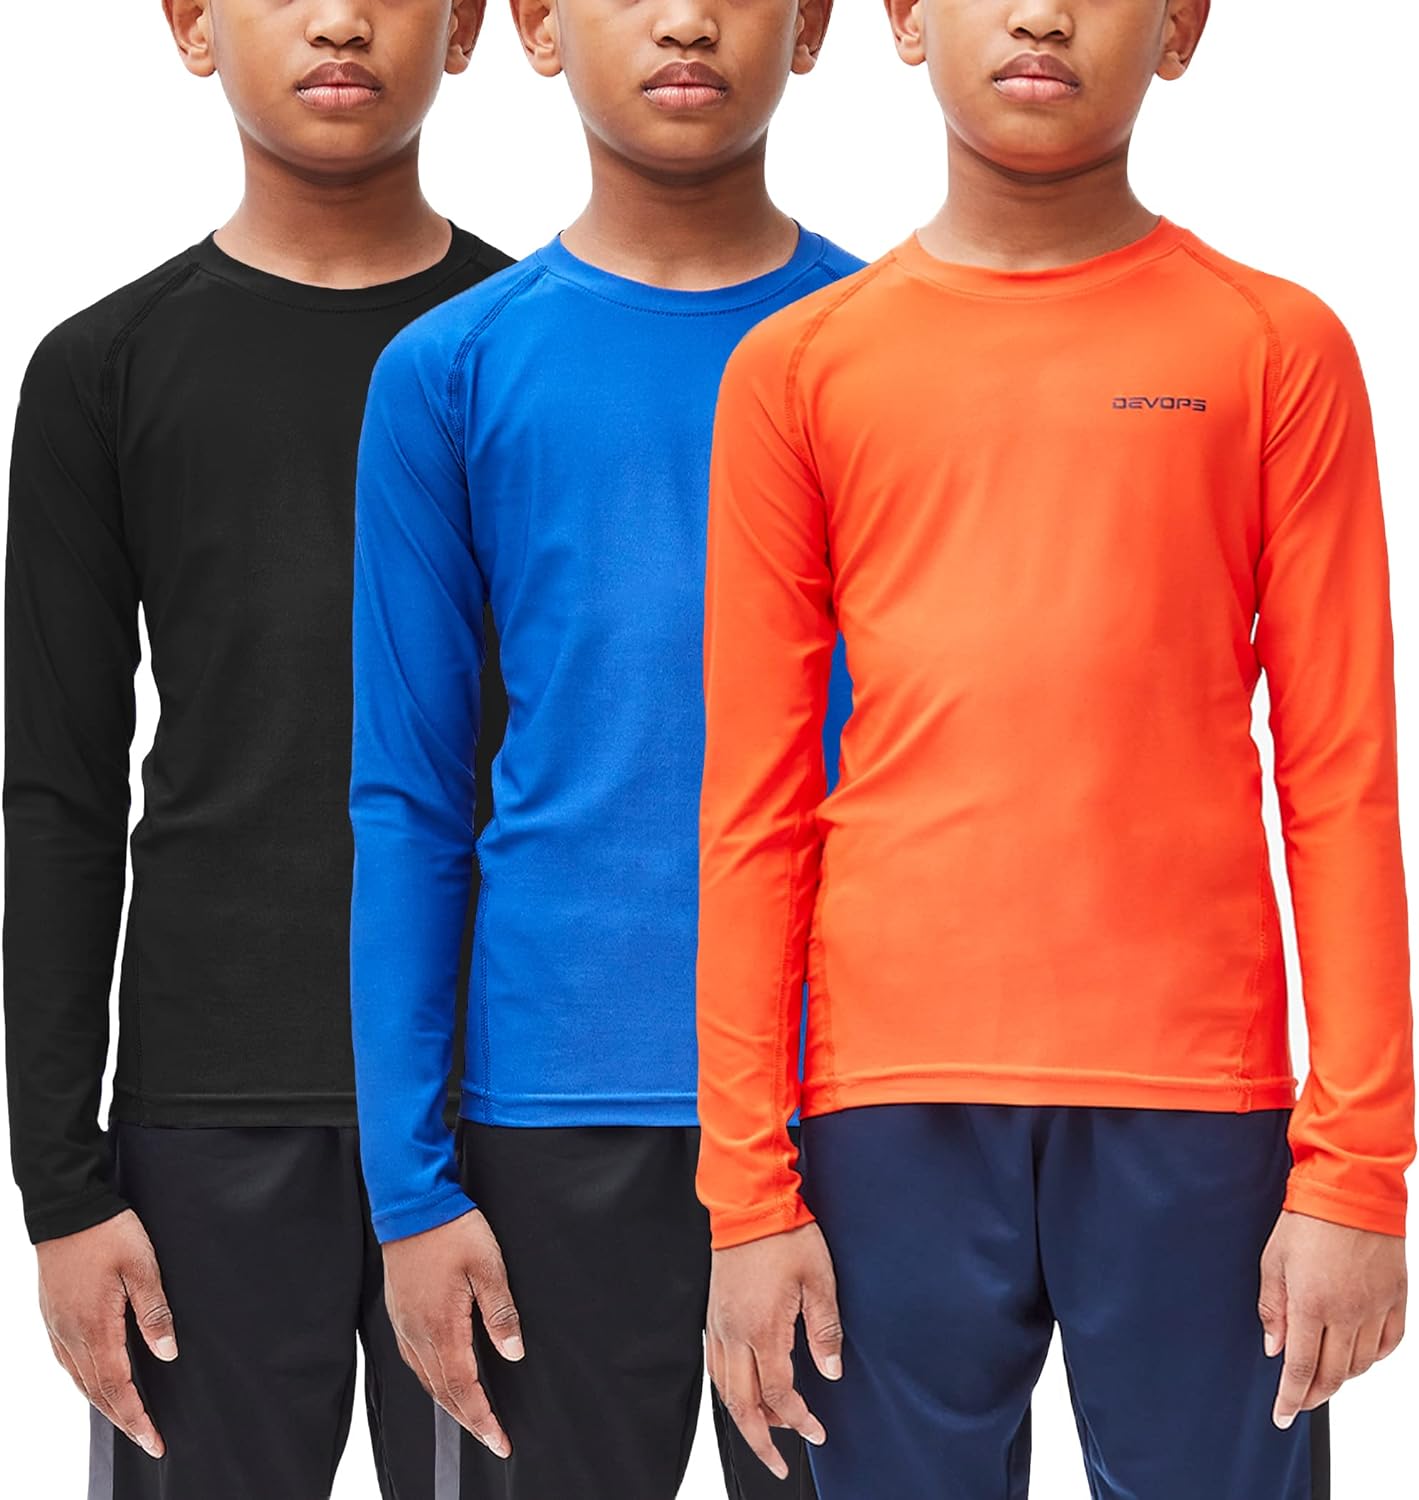 DEVOPS 3 Pack Men's Athletic Long Sleeve Compression Shirts